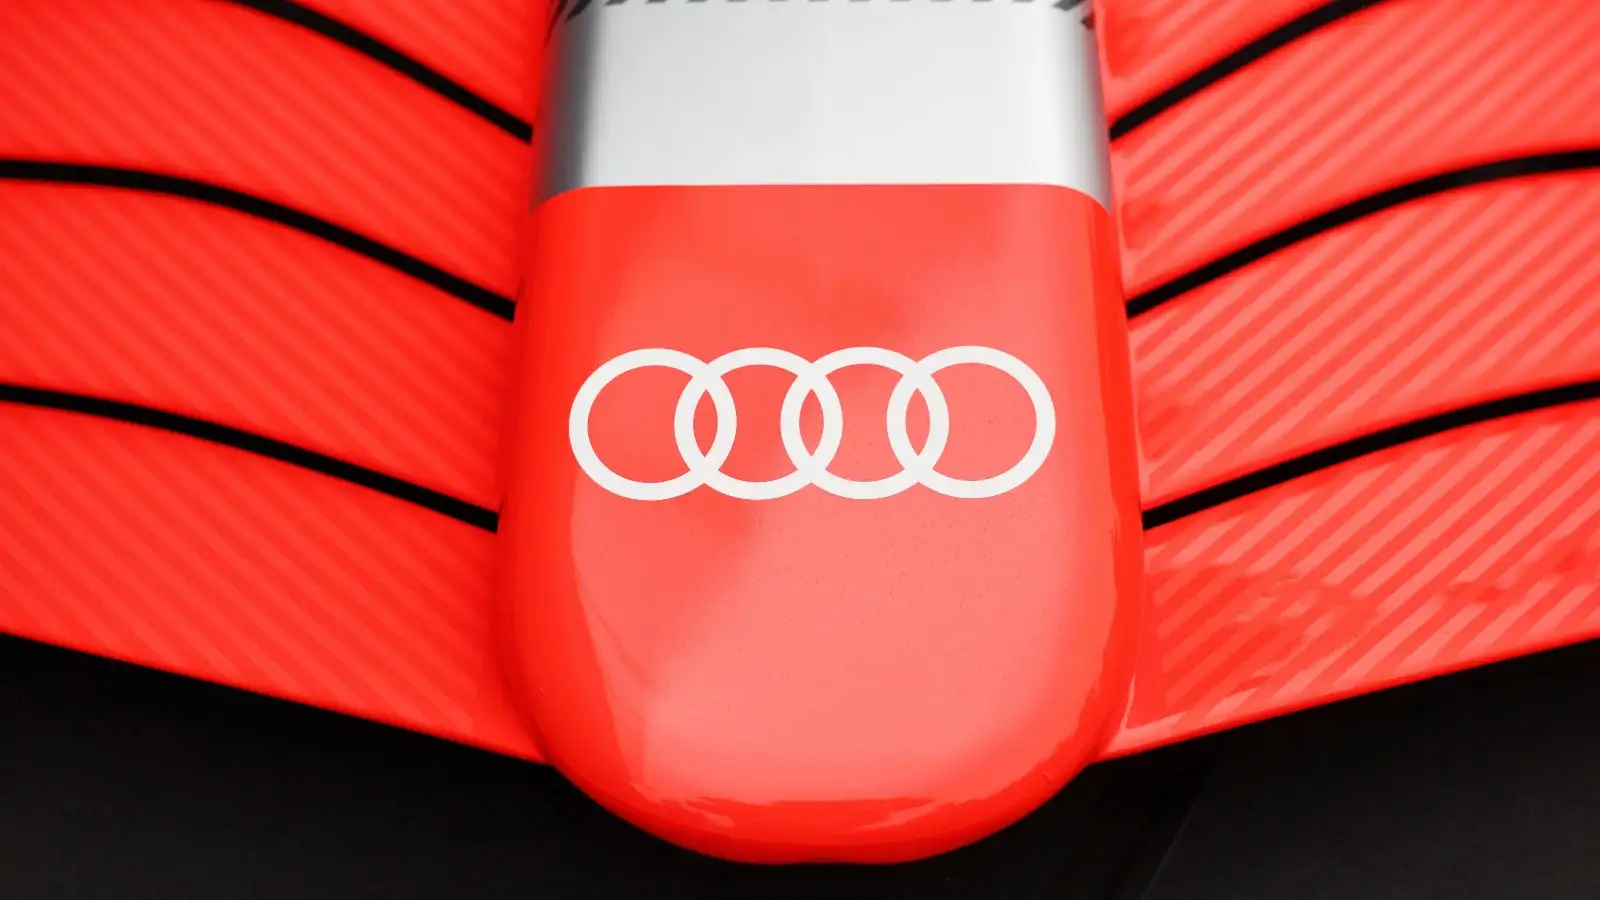 Audi's logo on an F1 car.